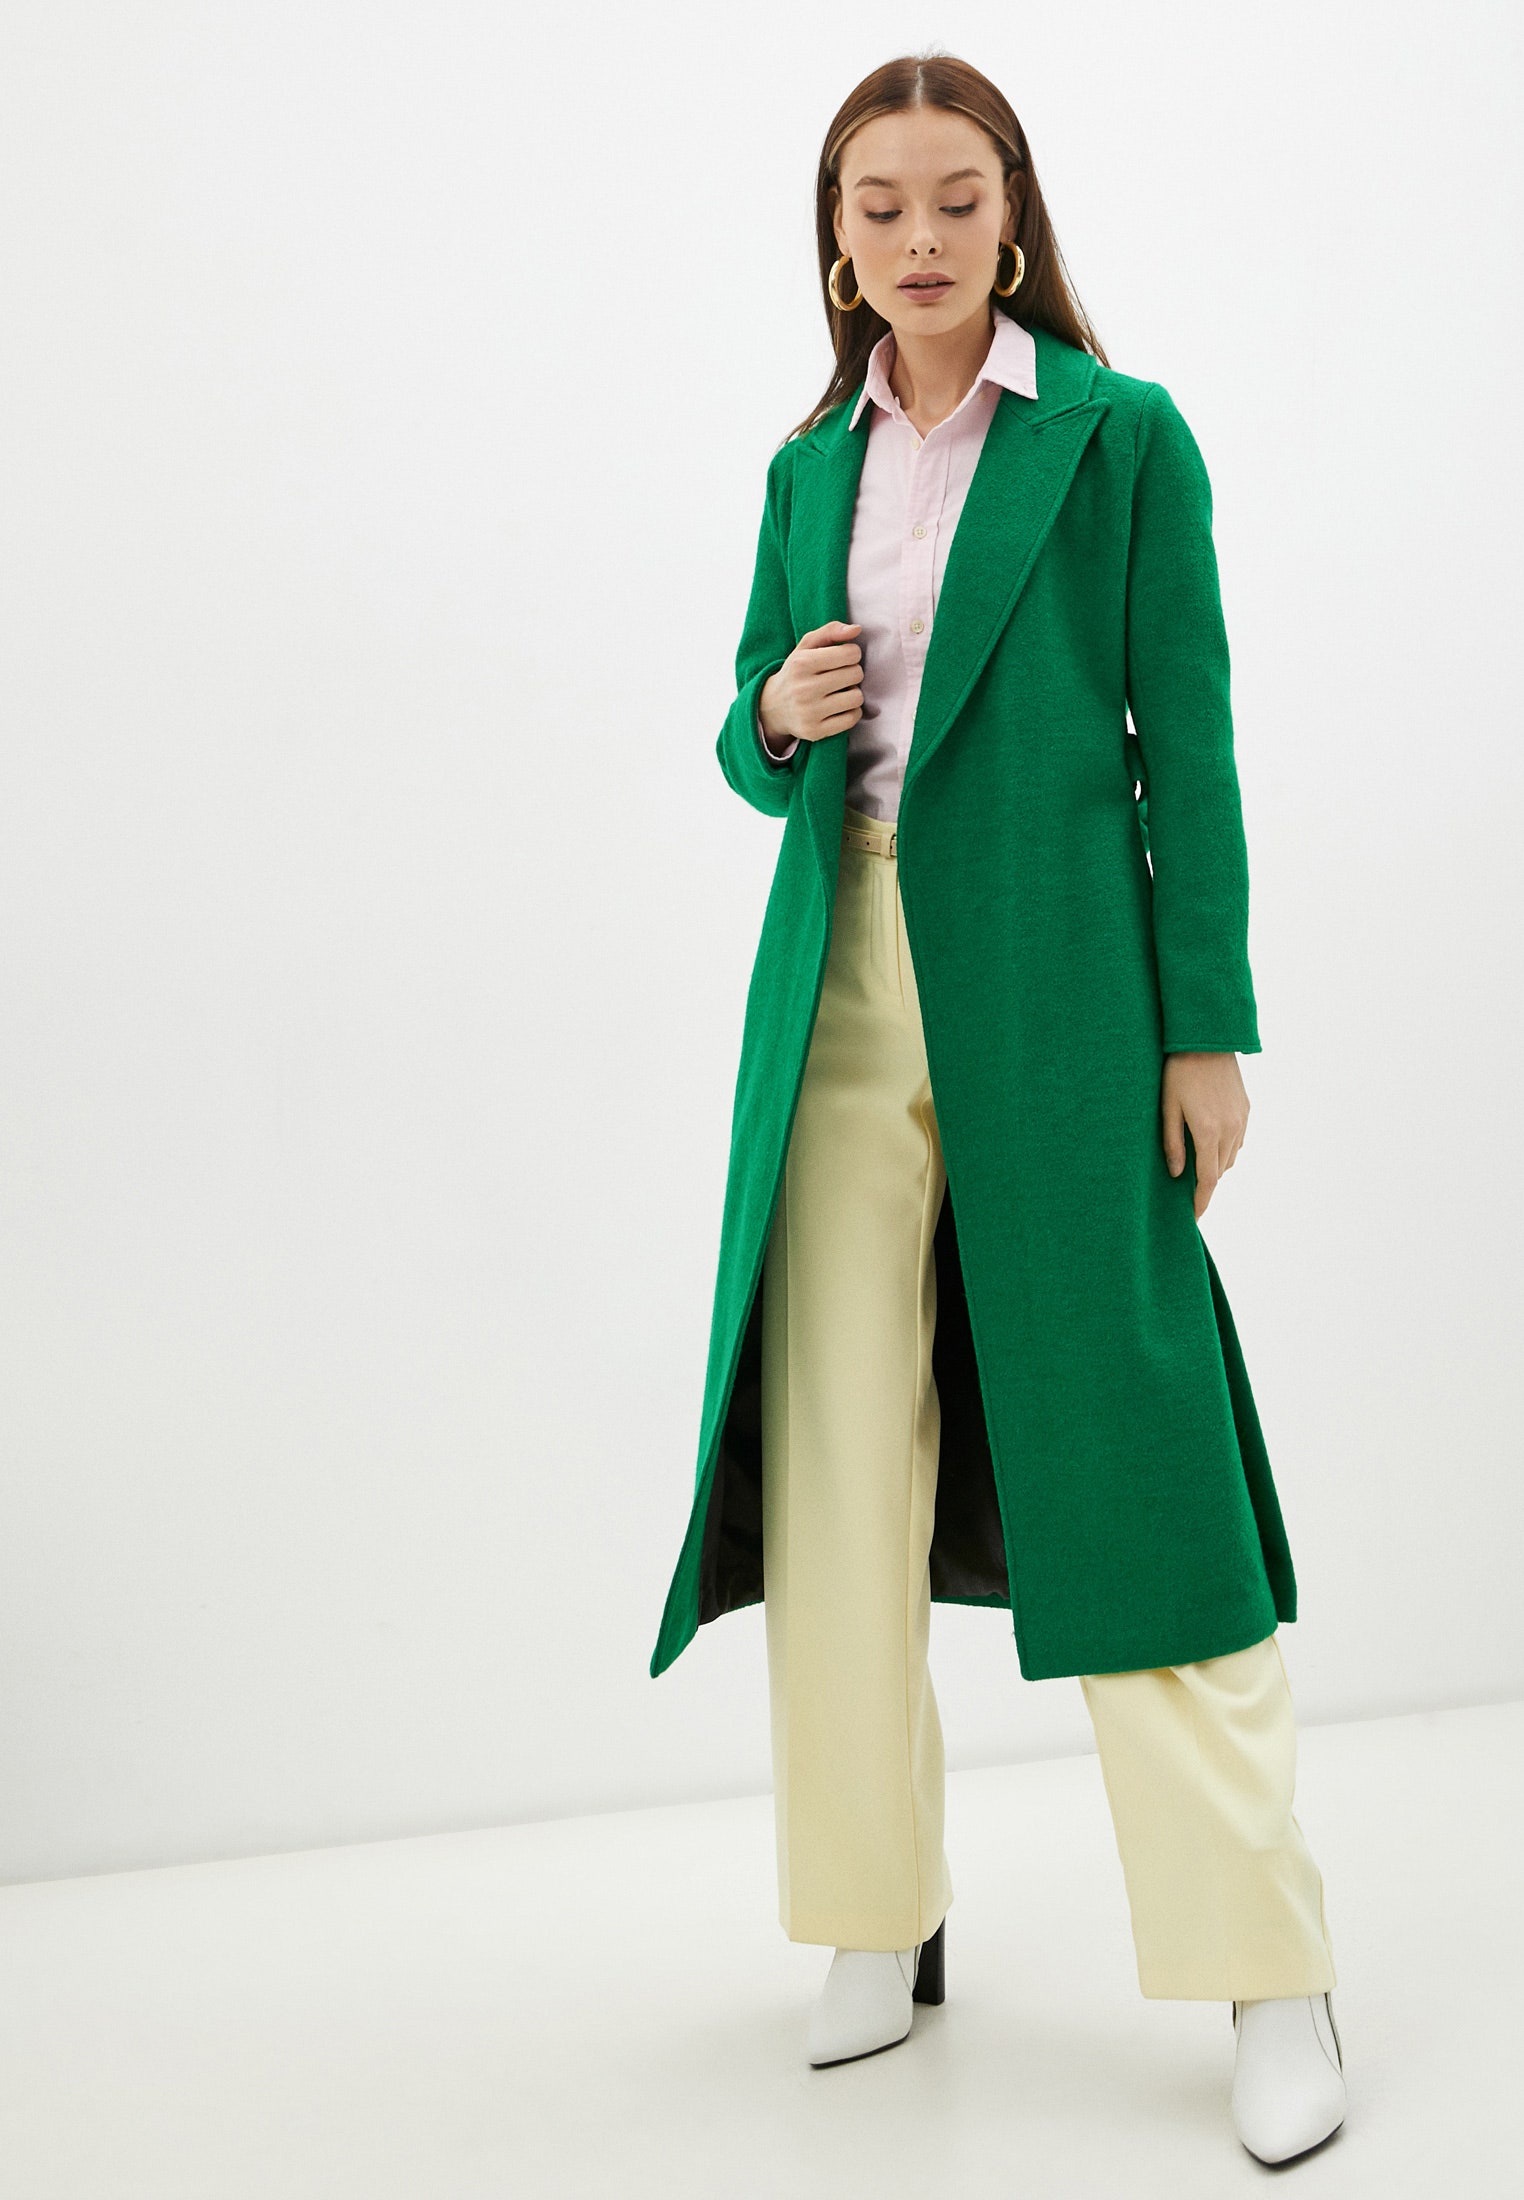 Топ Zara и старое пальто оцените новый выход Кейт Миддлтон